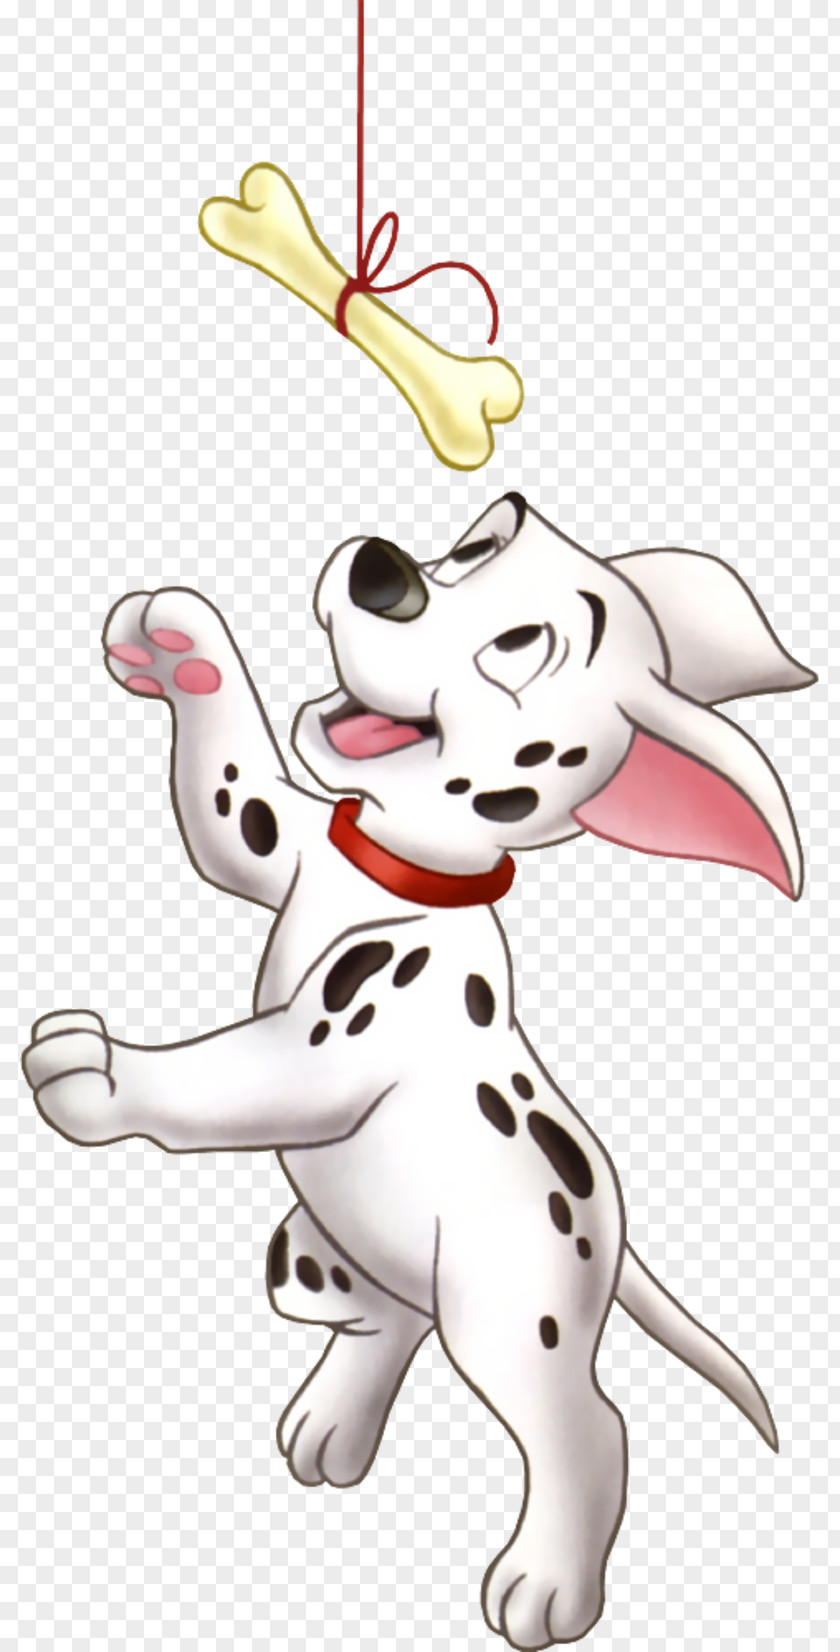 Puppy Dalmatian Dog Cruella De Vil The 101 Dalmatians Musical Clip Art PNG